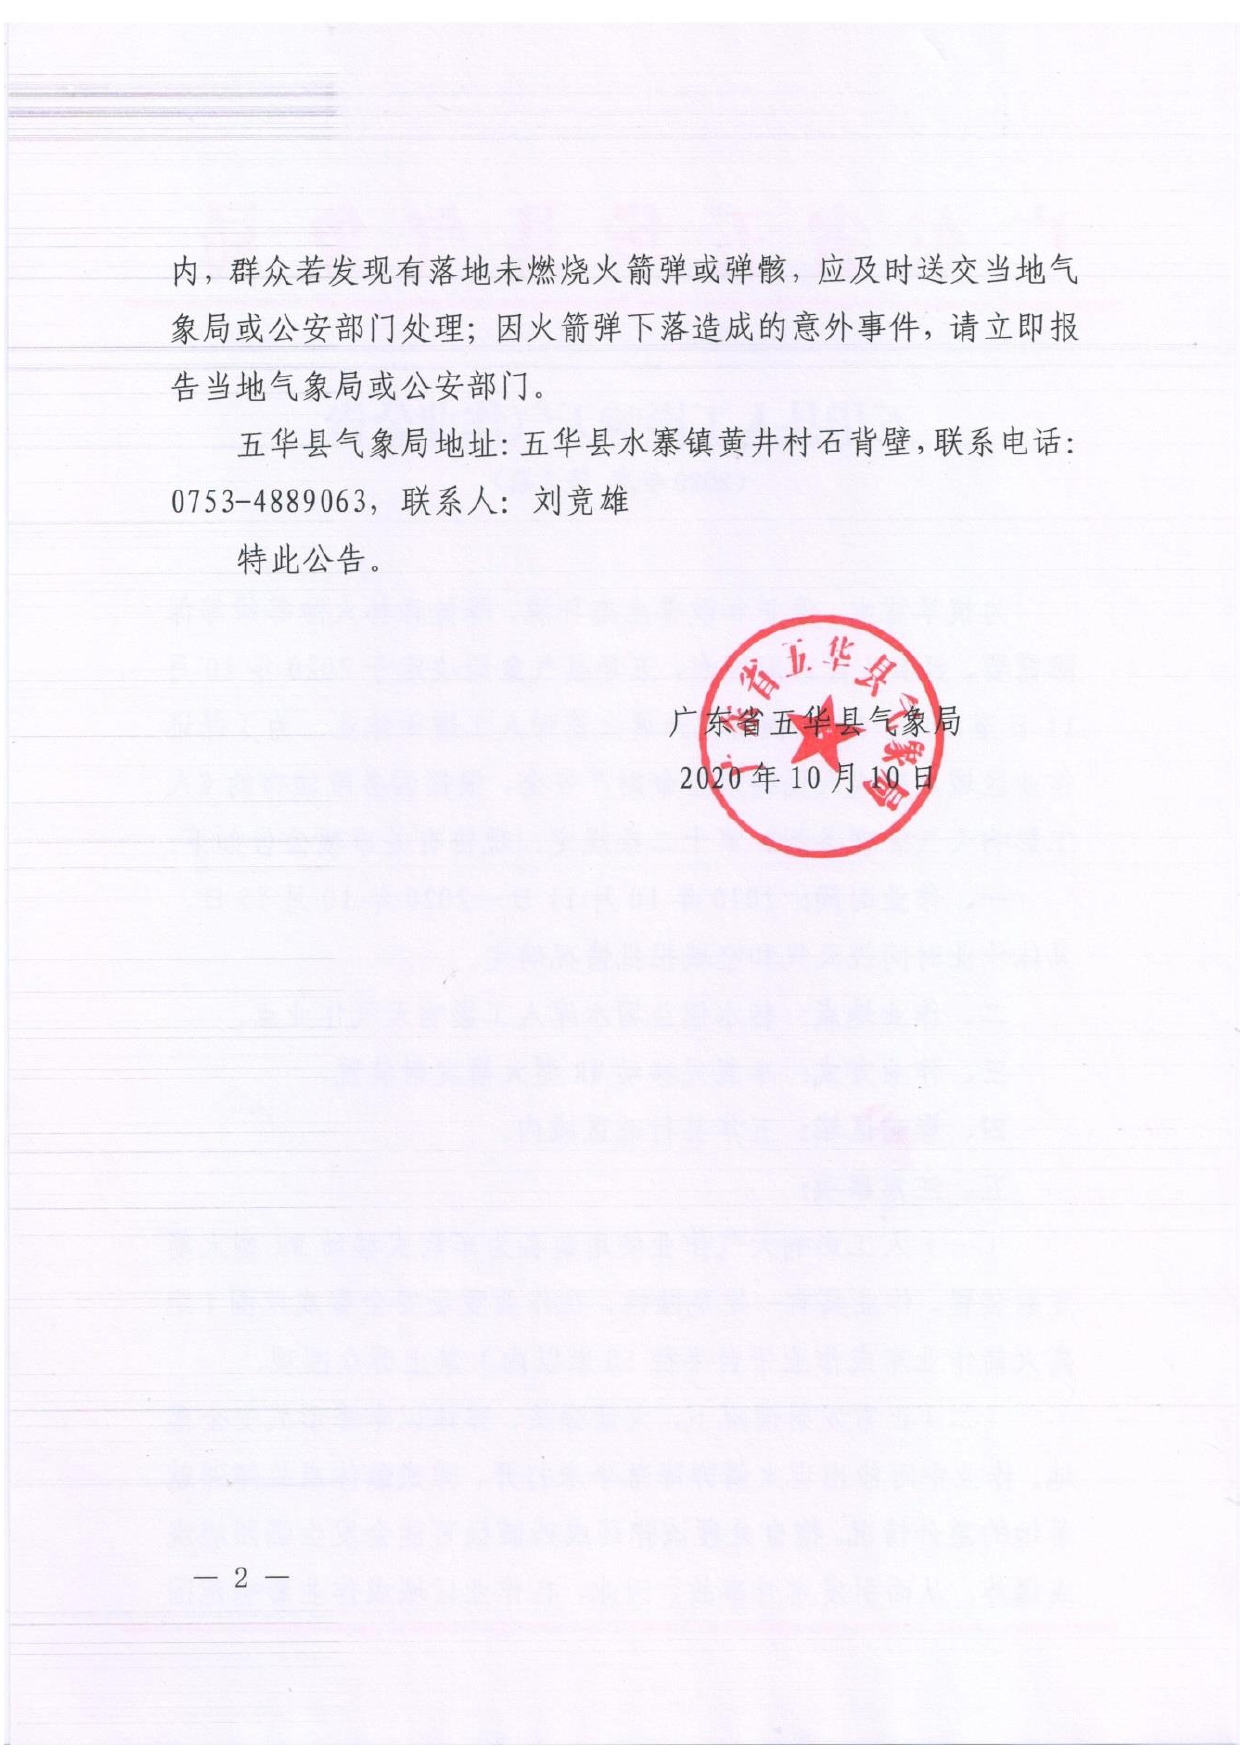 五华县人工影响天气作业公告2020 （第2期）0001.jpg